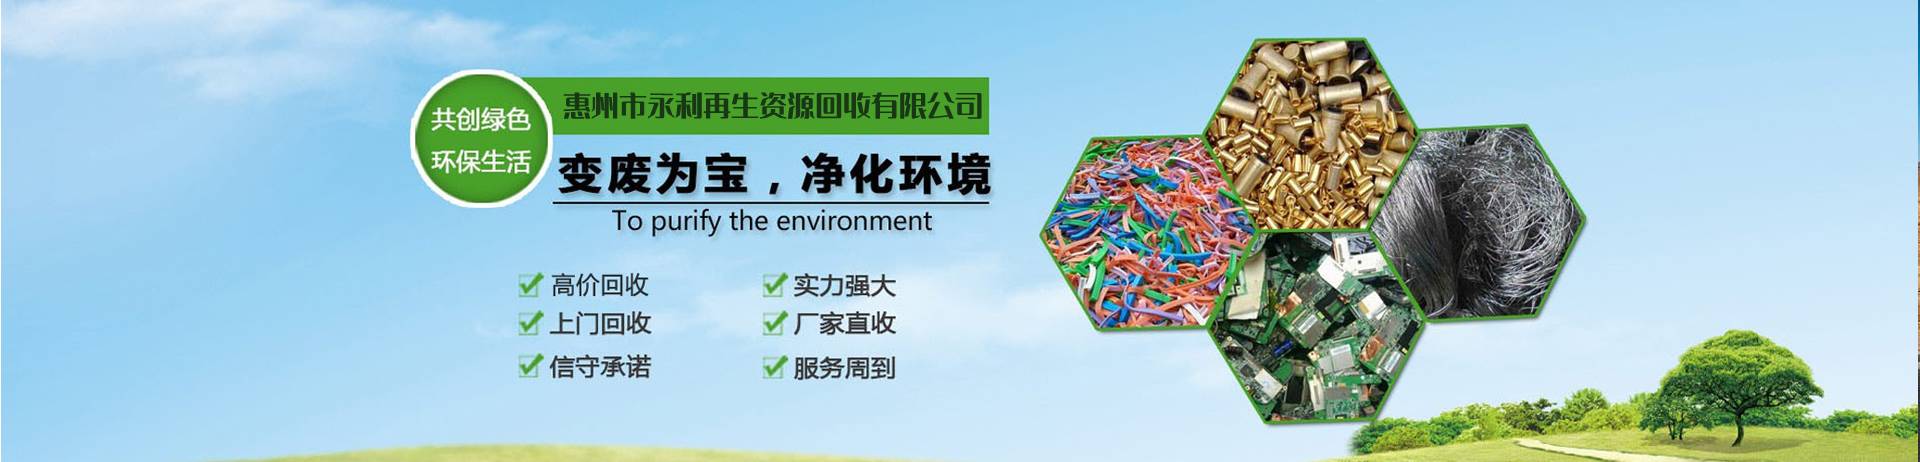 惠州废品回收